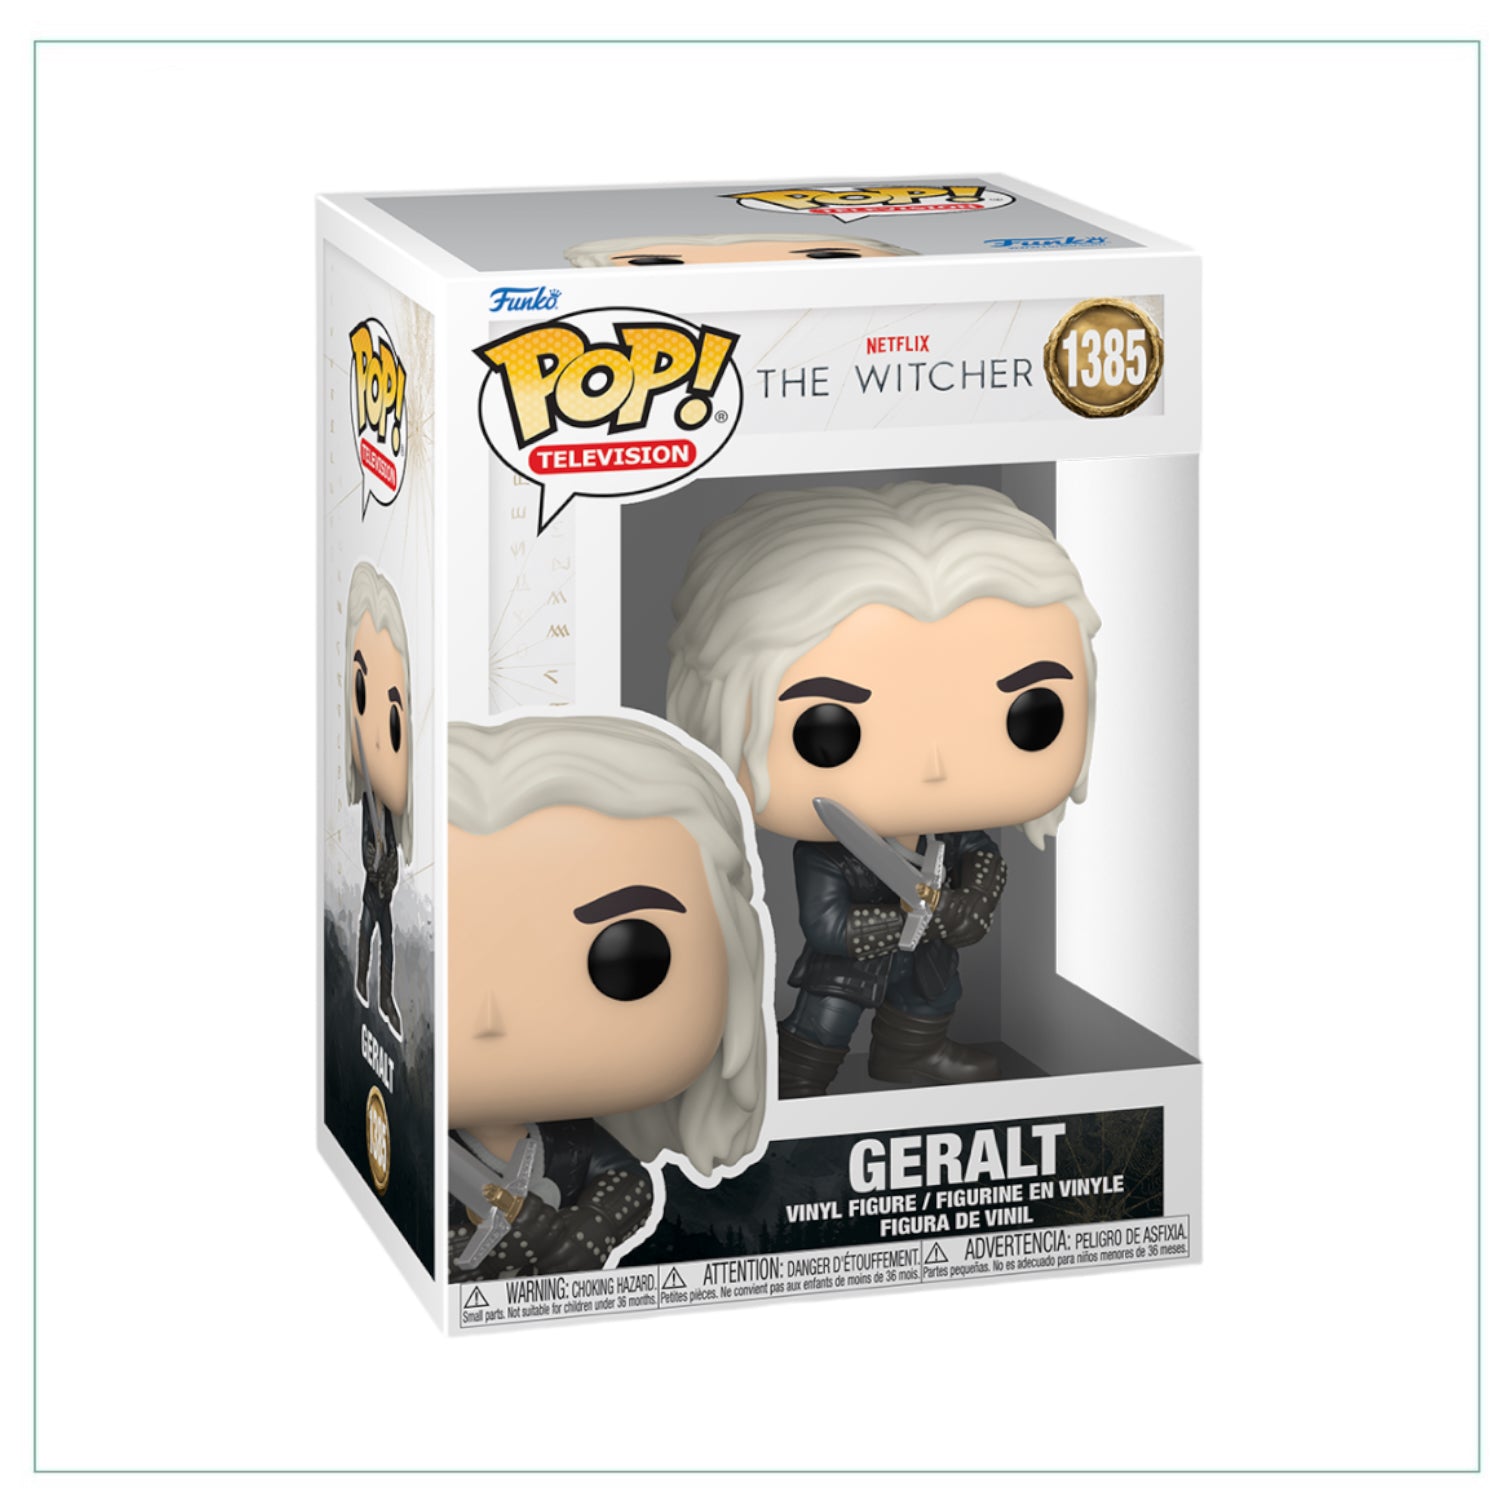 Geralt #1385 Funko Pop! The Witcher